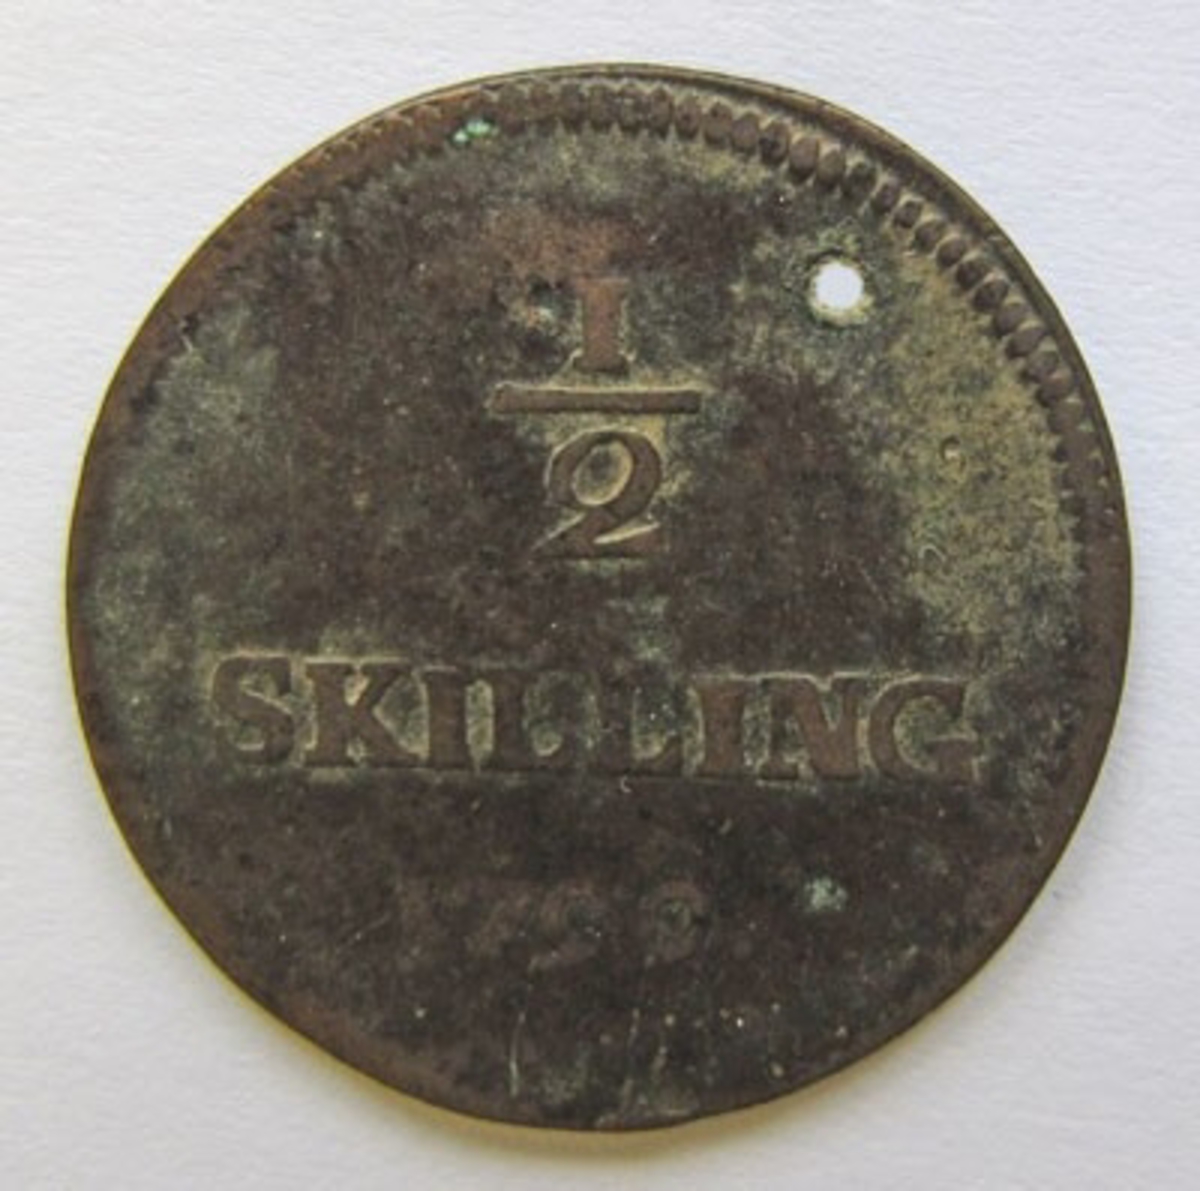 Gustav IV Adolf, ½ skilling riksgälds, polett av koppar. Präglat i Avesta 1799. Myntet är perforerat.